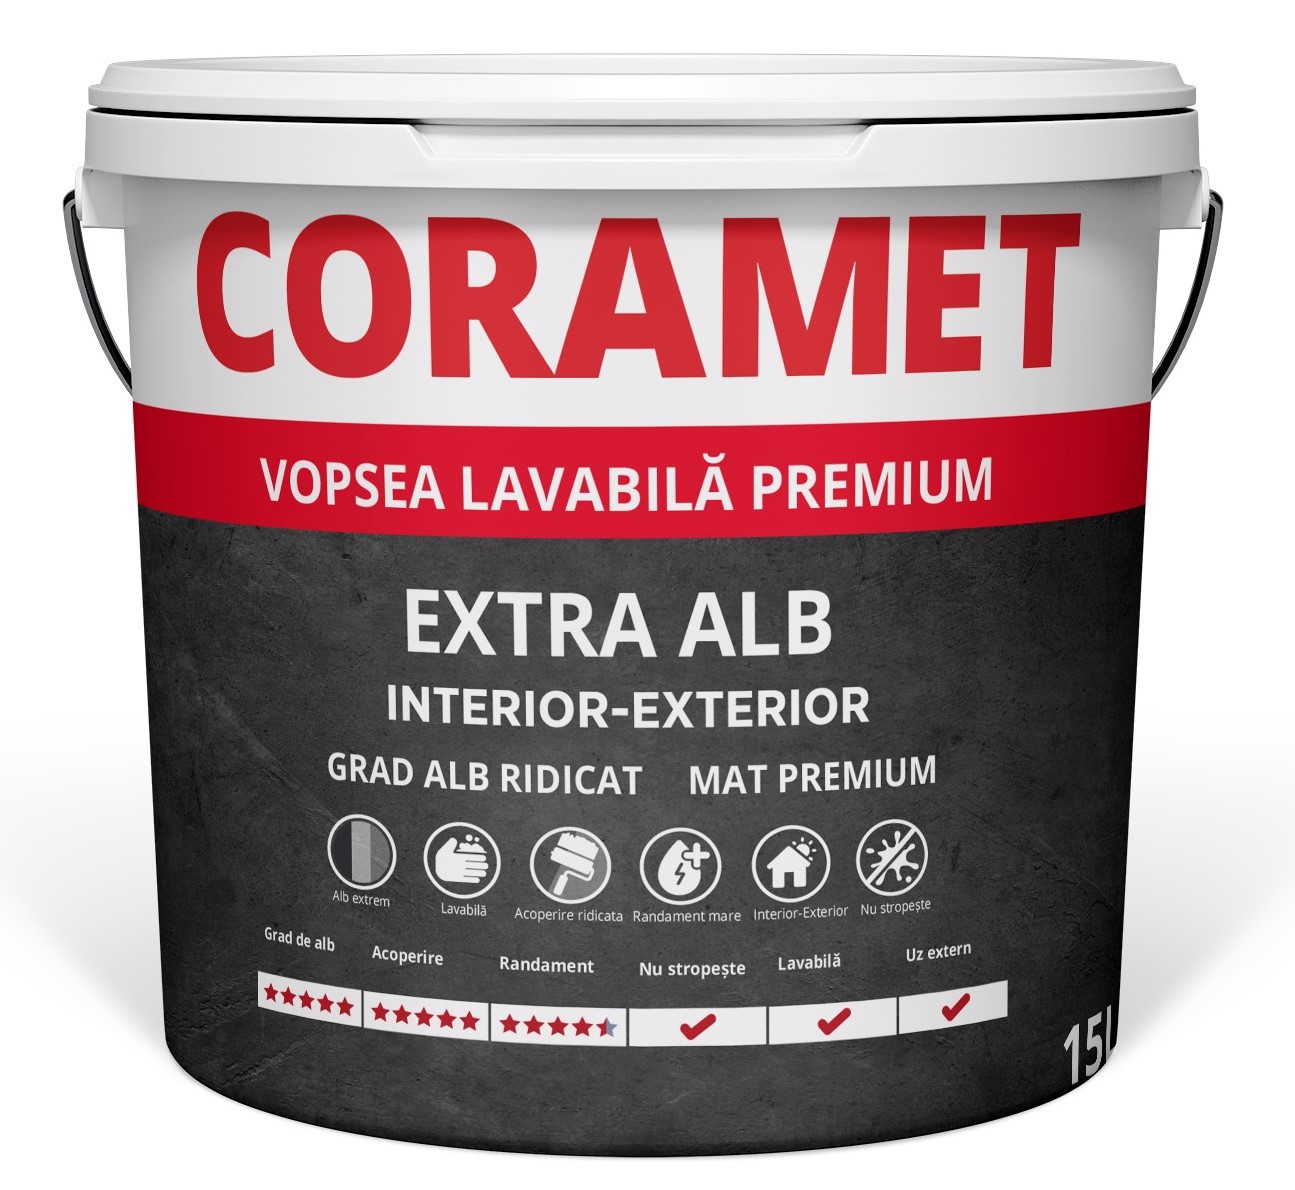 Coramet Premium Extra Alb Vopsea lavabila